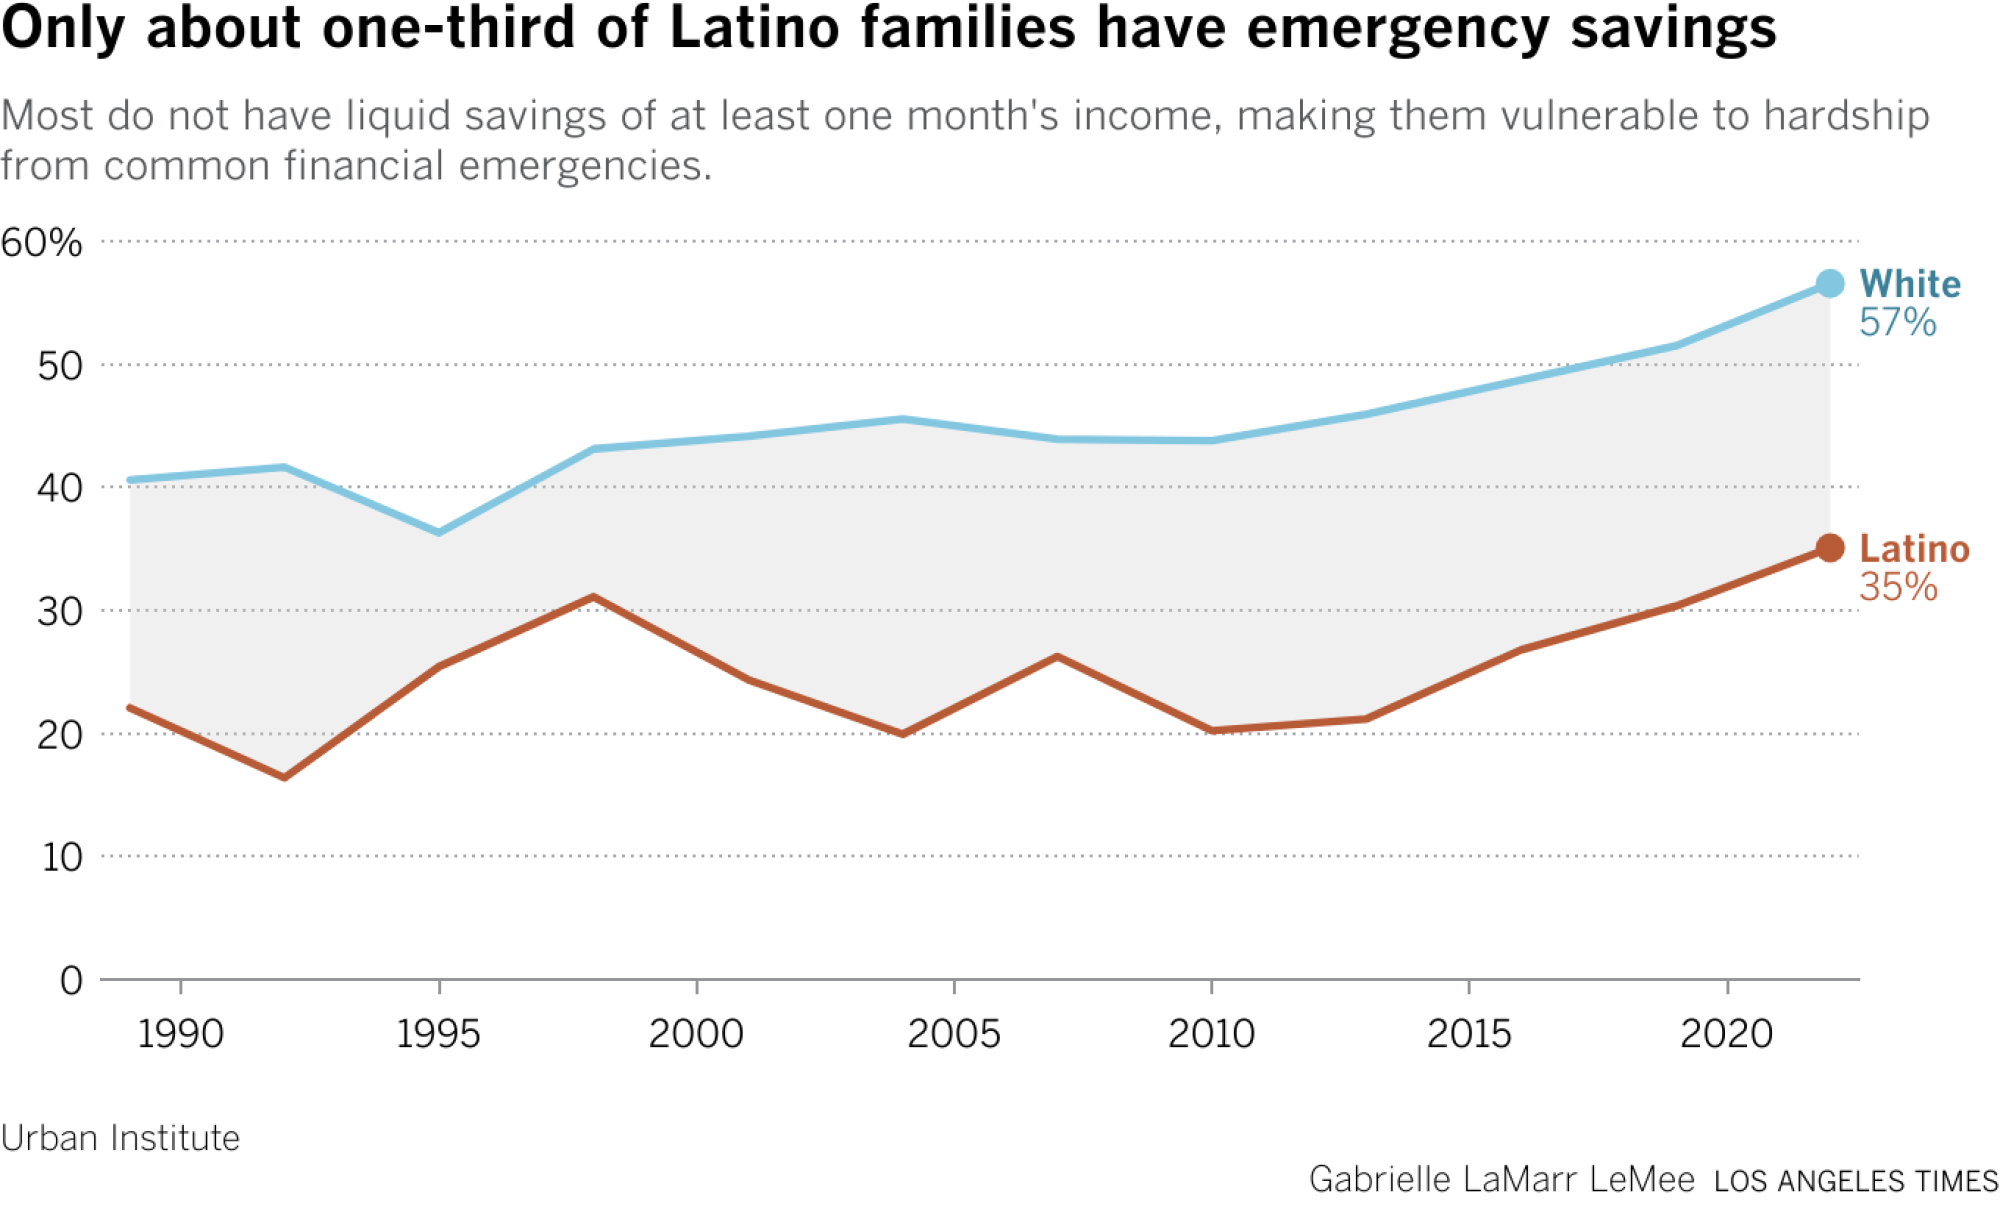 Gráfico de líneas que muestra la proporción de hogares blancos e hispanos con al menos un mes de ahorros de emergencia.  En 2022, el 35% de las familias hispanas y el 57% de las familias blancas tendrán esta tasa de ahorro.